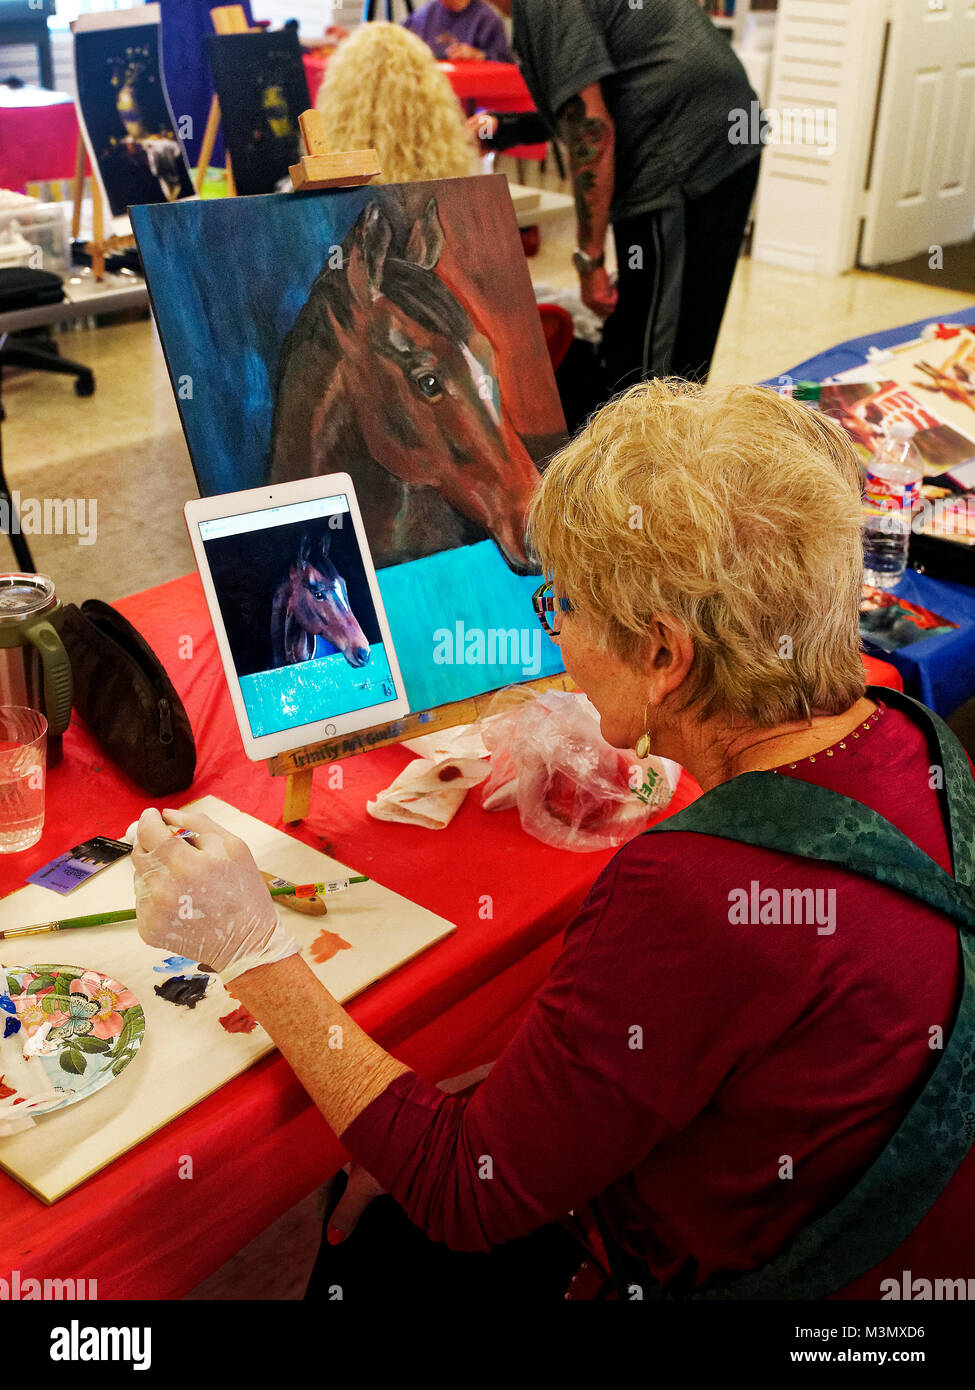 Les aînés ayant vécu une longue dure toujours demeurer actif s'exprimer en classe de peinture, Pam Smith utilise une photo prise avec son iPad pour peindre un cheval d'amis. Banque D'Images